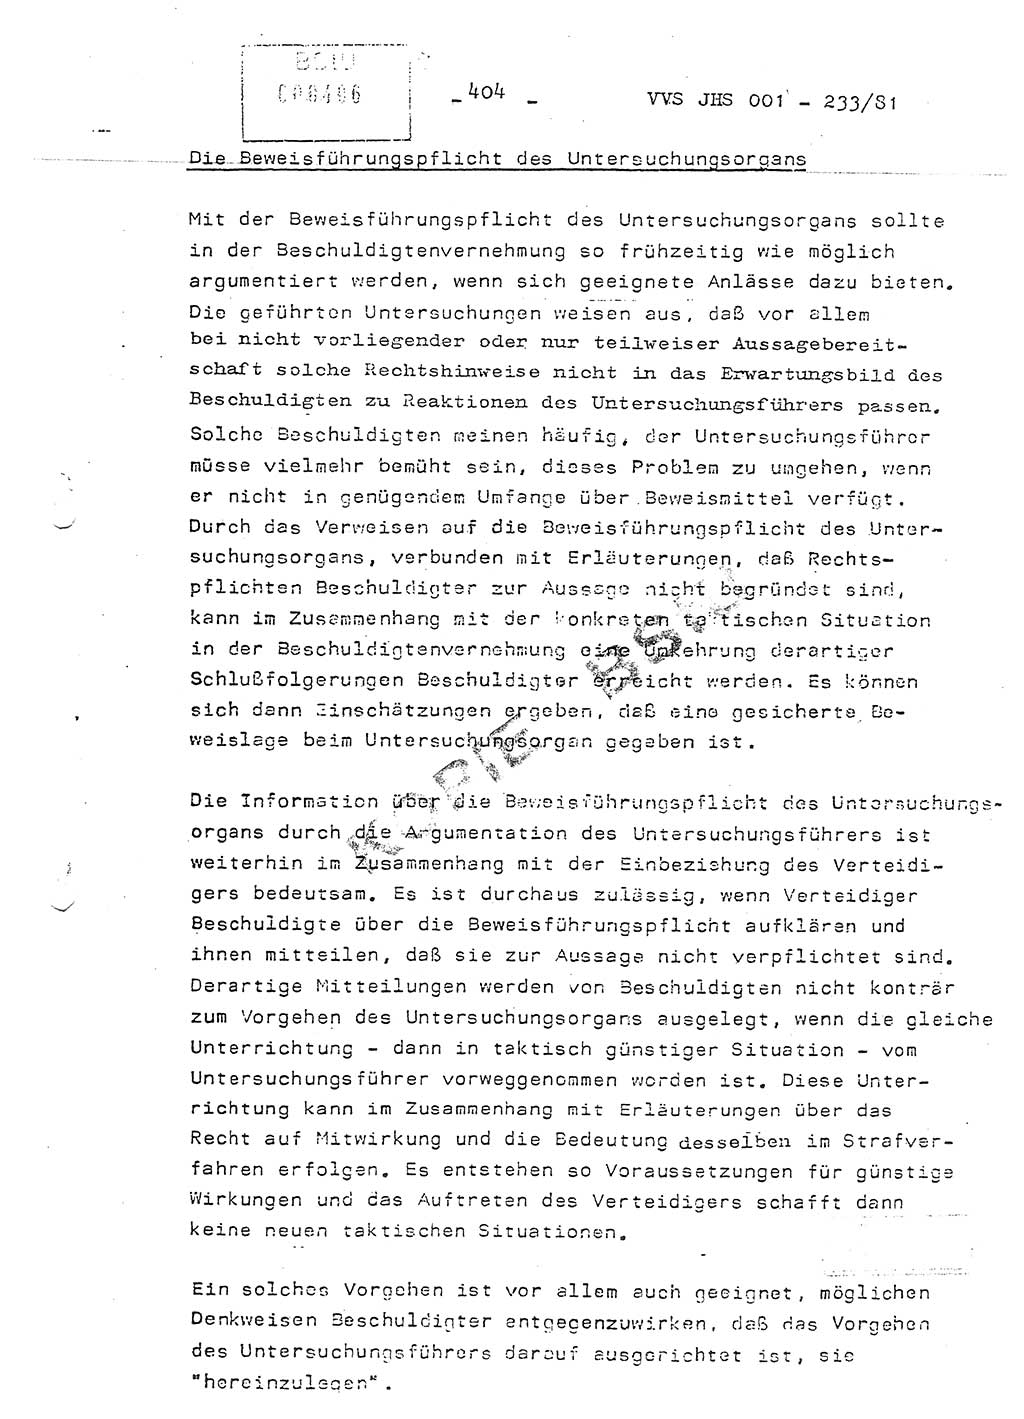 Dissertation Oberstleutnant Horst Zank (JHS), Oberstleutnant Dr. Karl-Heinz Knoblauch (JHS), Oberstleutnant Gustav-Adolf Kowalewski (HA Ⅸ), Oberstleutnant Wolfgang Plötner (HA Ⅸ), Ministerium für Staatssicherheit (MfS) [Deutsche Demokratische Republik (DDR)], Juristische Hochschule (JHS), Vertrauliche Verschlußsache (VVS) o001-233/81, Potsdam 1981, Blatt 404 (Diss. MfS DDR JHS VVS o001-233/81 1981, Bl. 404)